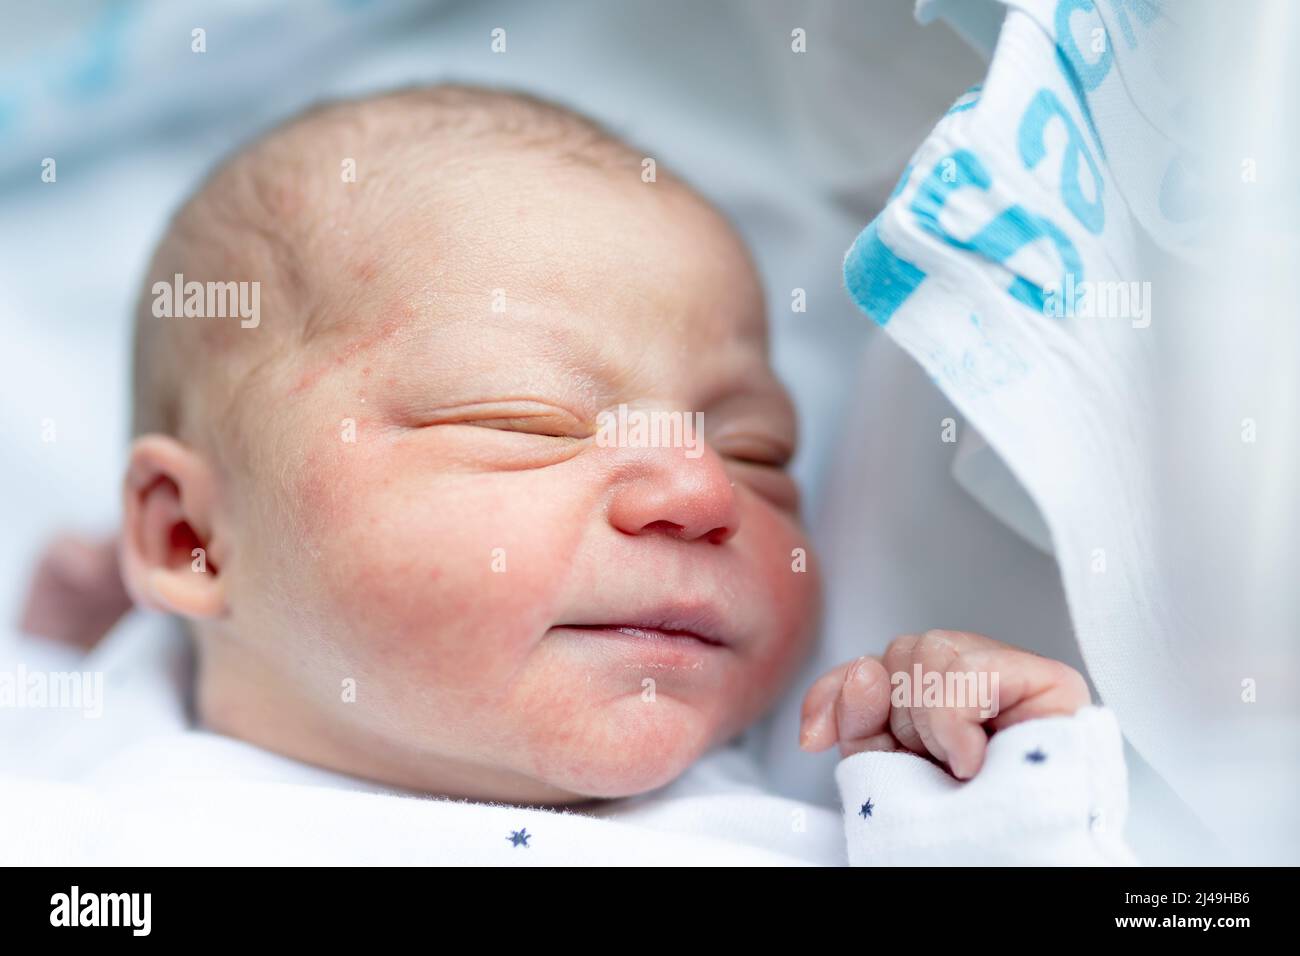 portrait du visage et de la petite main d'un nouveau-né endormi avec des heures de vie à l'hôpital de maternité. naissance, nouvelle vie et concept futur. Banque D'Images